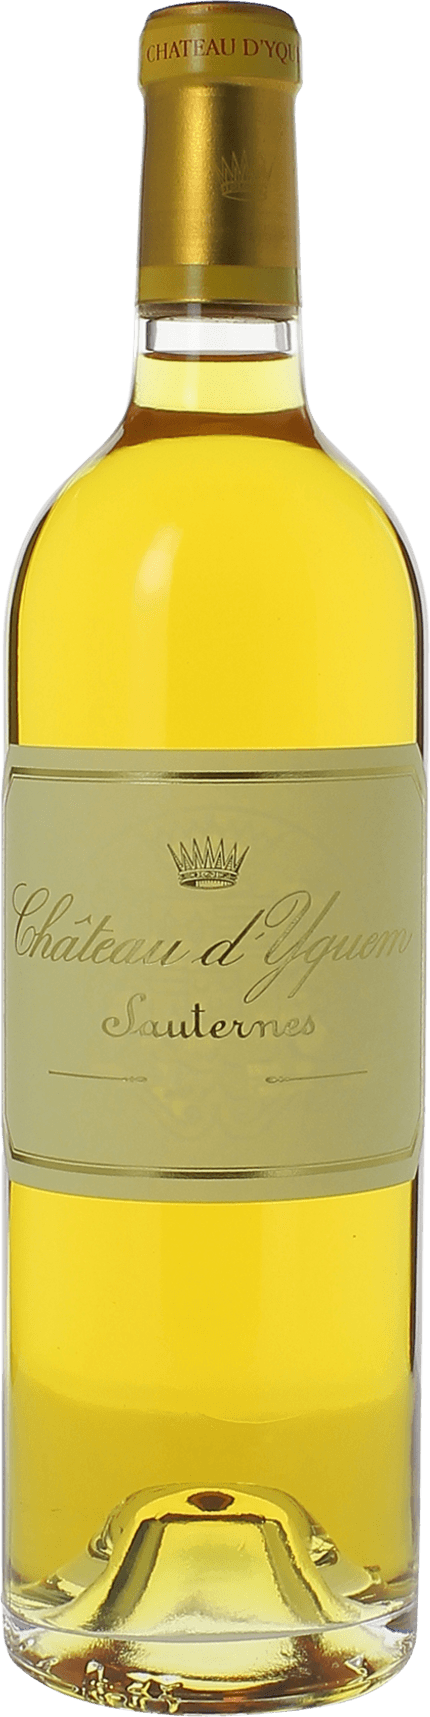 Yquem 2001 1er Grand cru class Sauternes, Bordeaux blanc